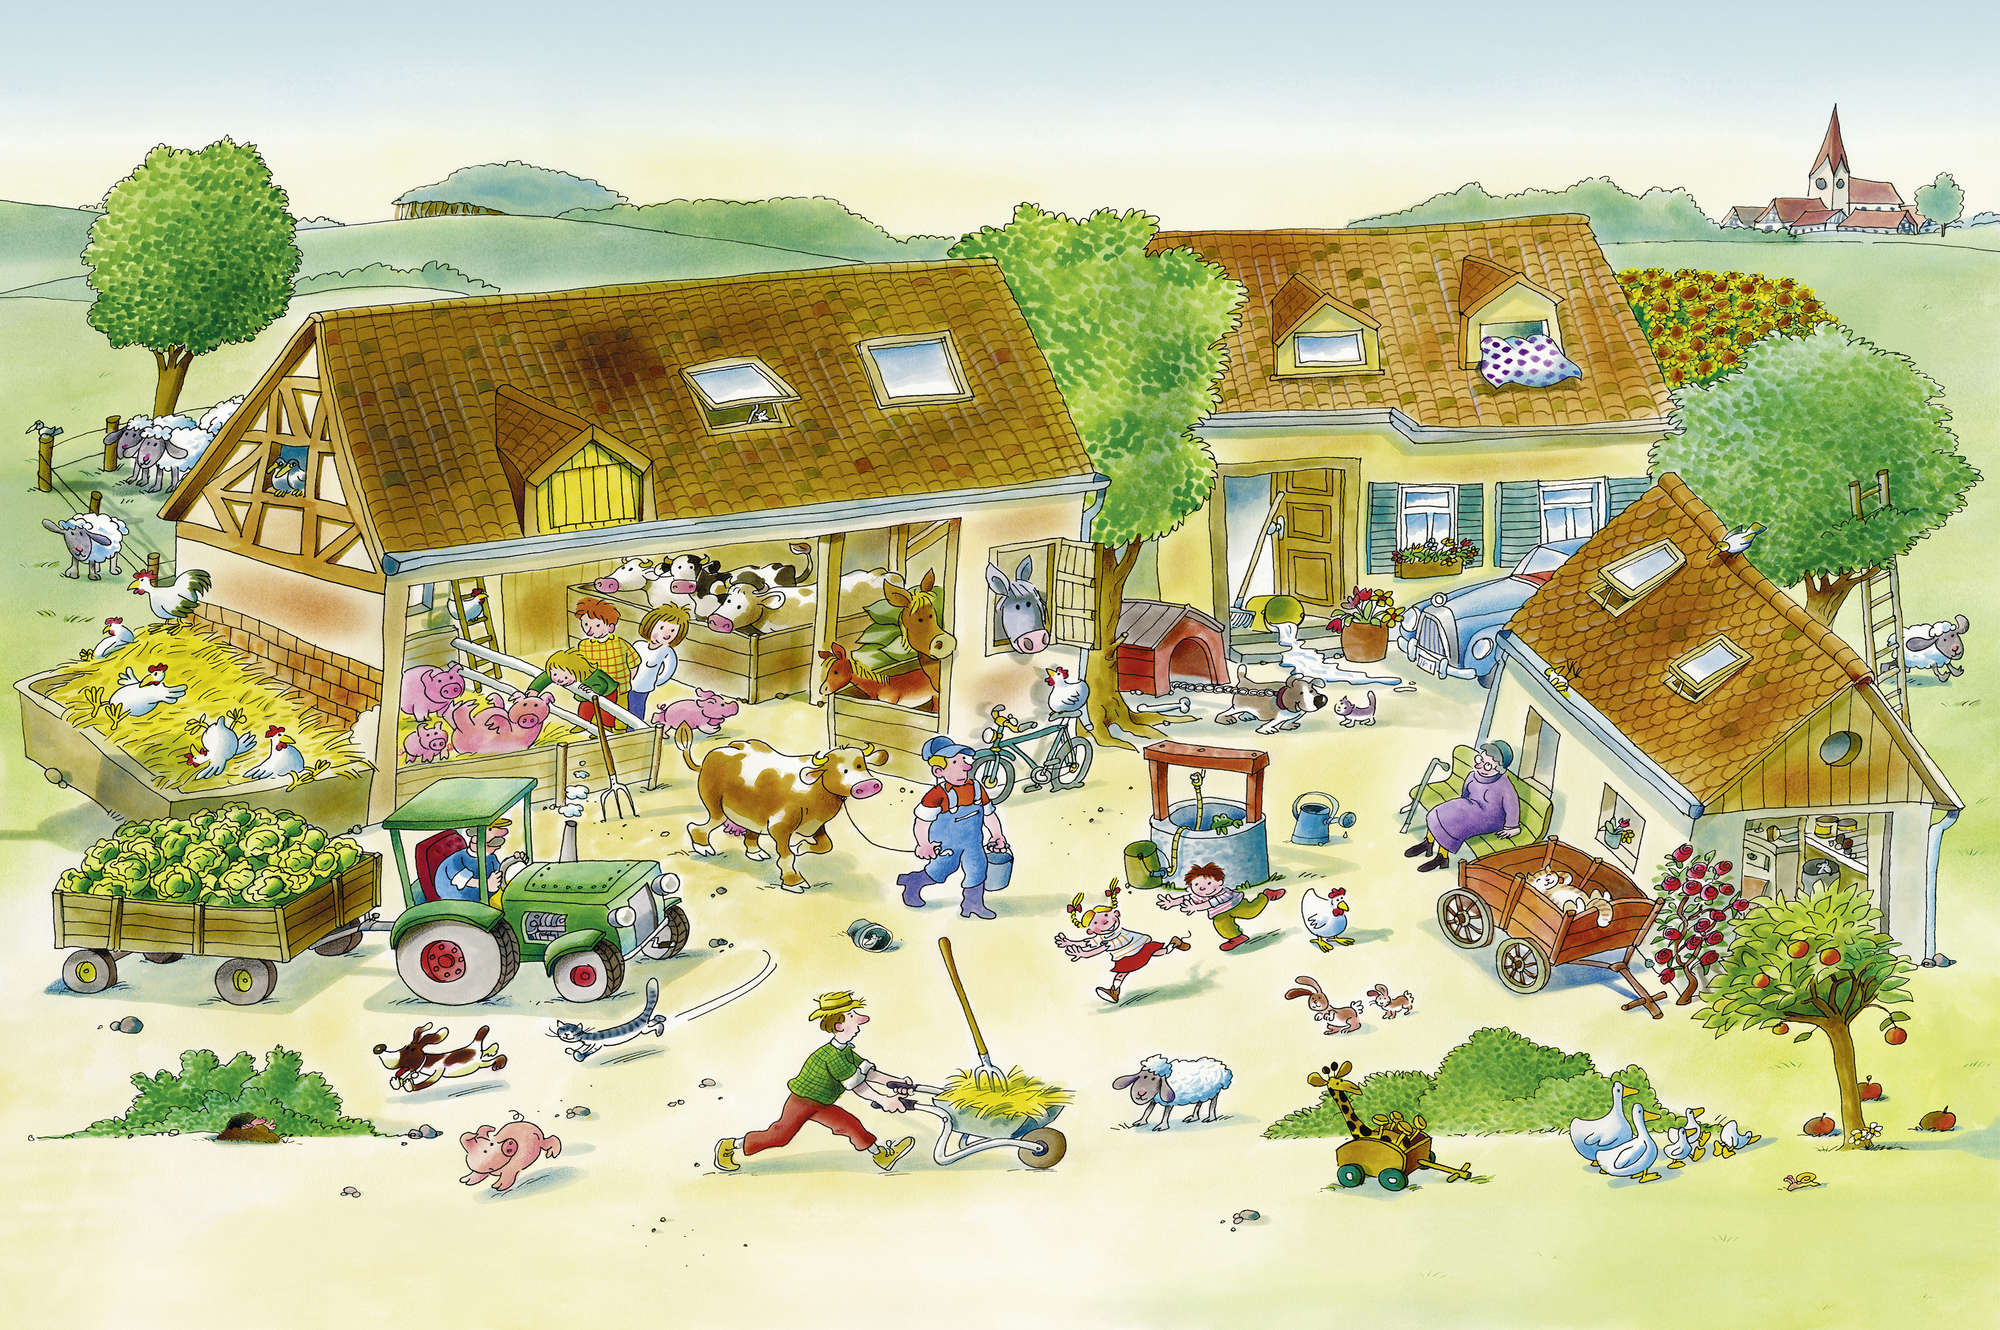             Kinderboerderijbehang met dieren in bruin en groen op structuurvlies
        